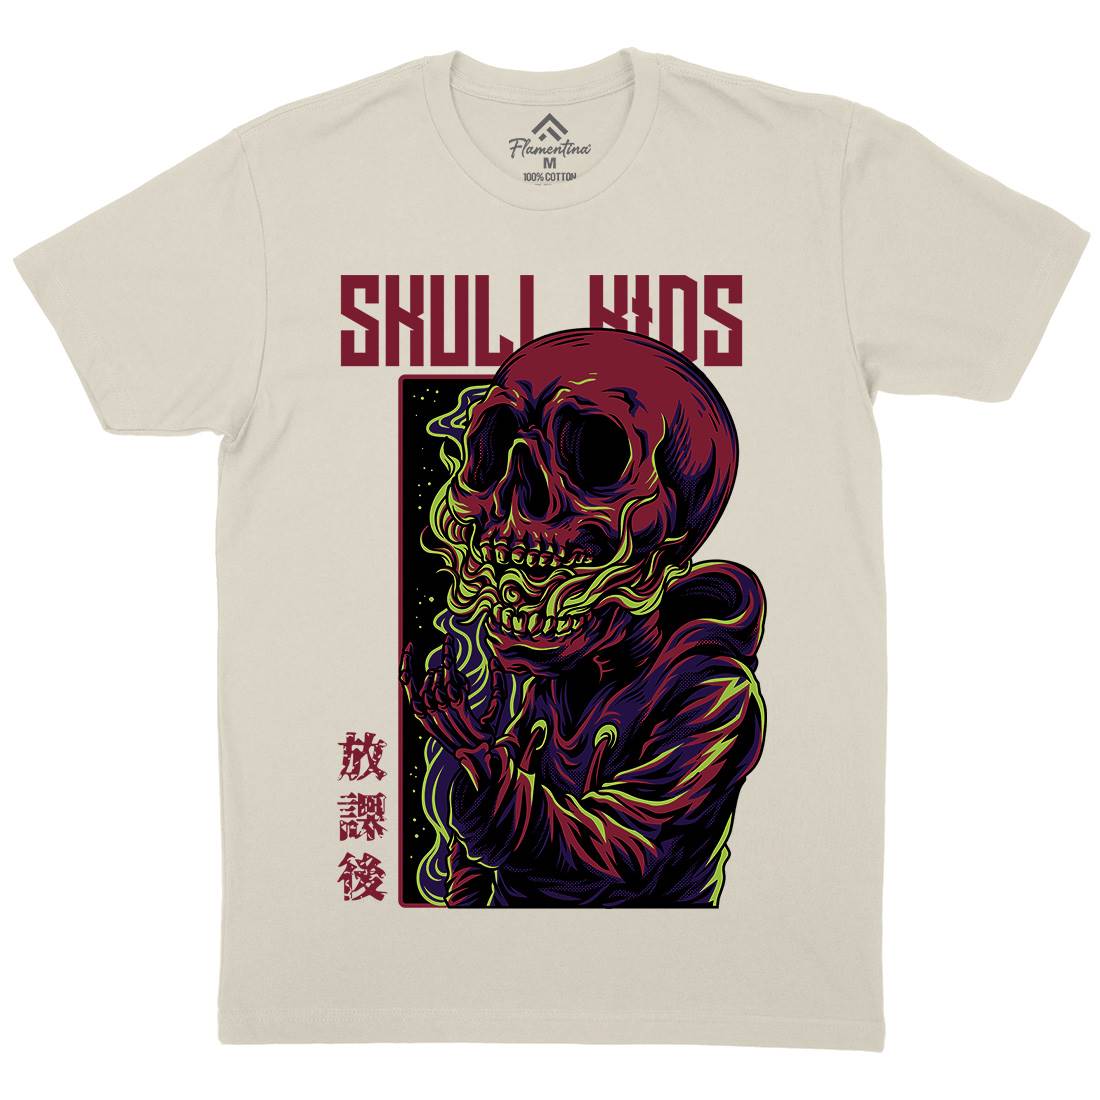 Skull Kids Mens Organic Crew Neck T-Shirt Horror D816